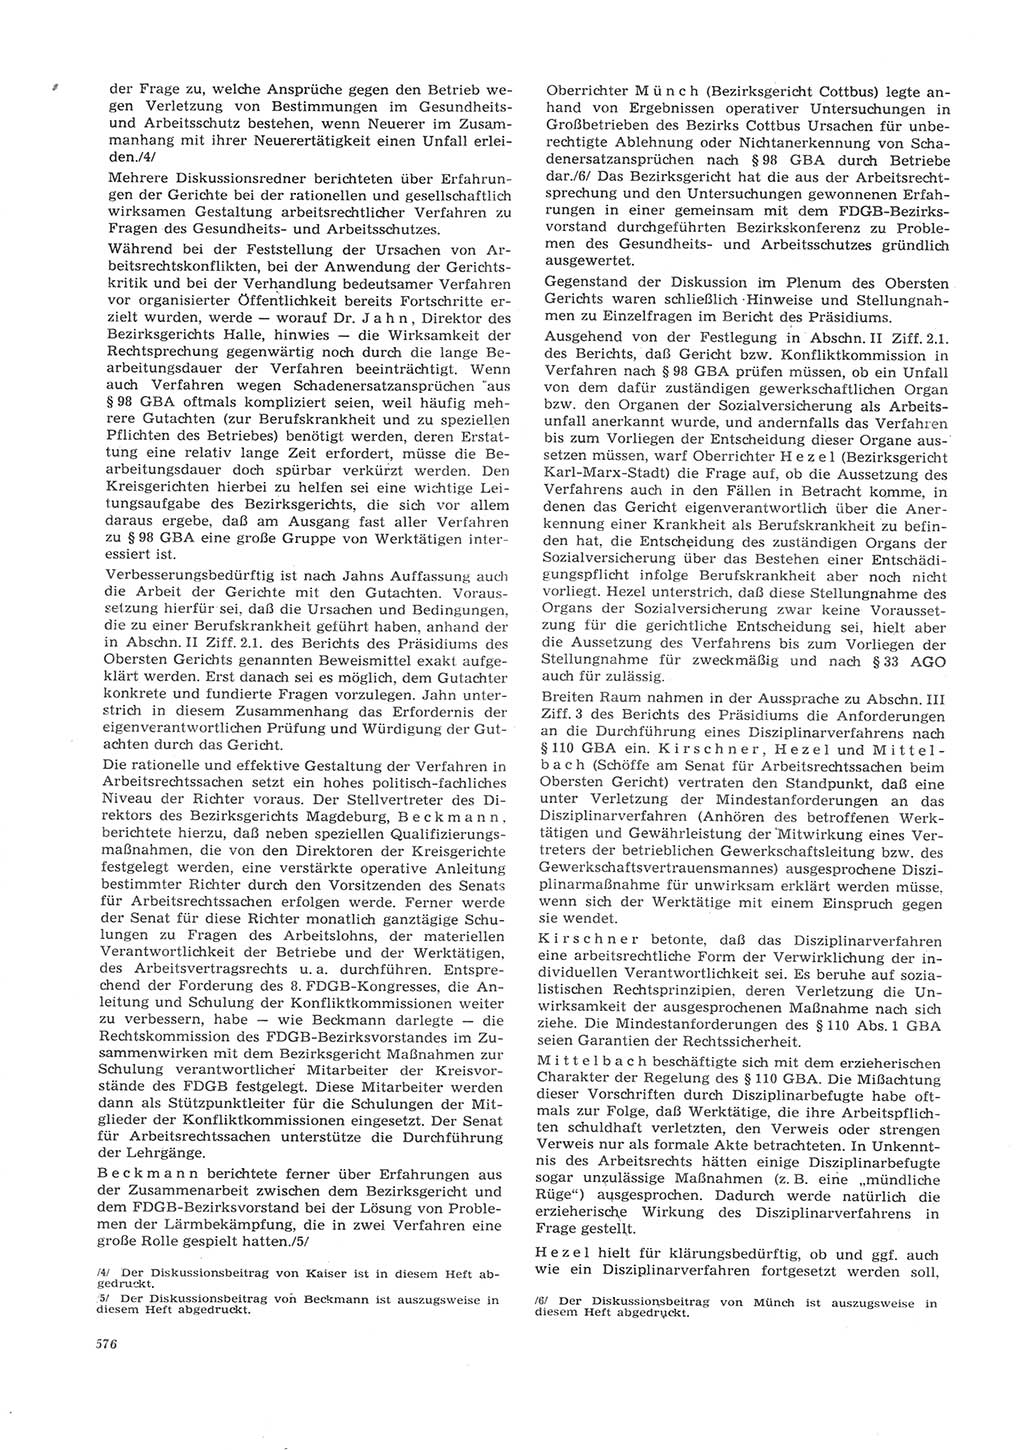 Neue Justiz (NJ), Zeitschrift für Recht und Rechtswissenschaft [Deutsche Demokratische Republik (DDR)], 26. Jahrgang 1972, Seite 576 (NJ DDR 1972, S. 576)